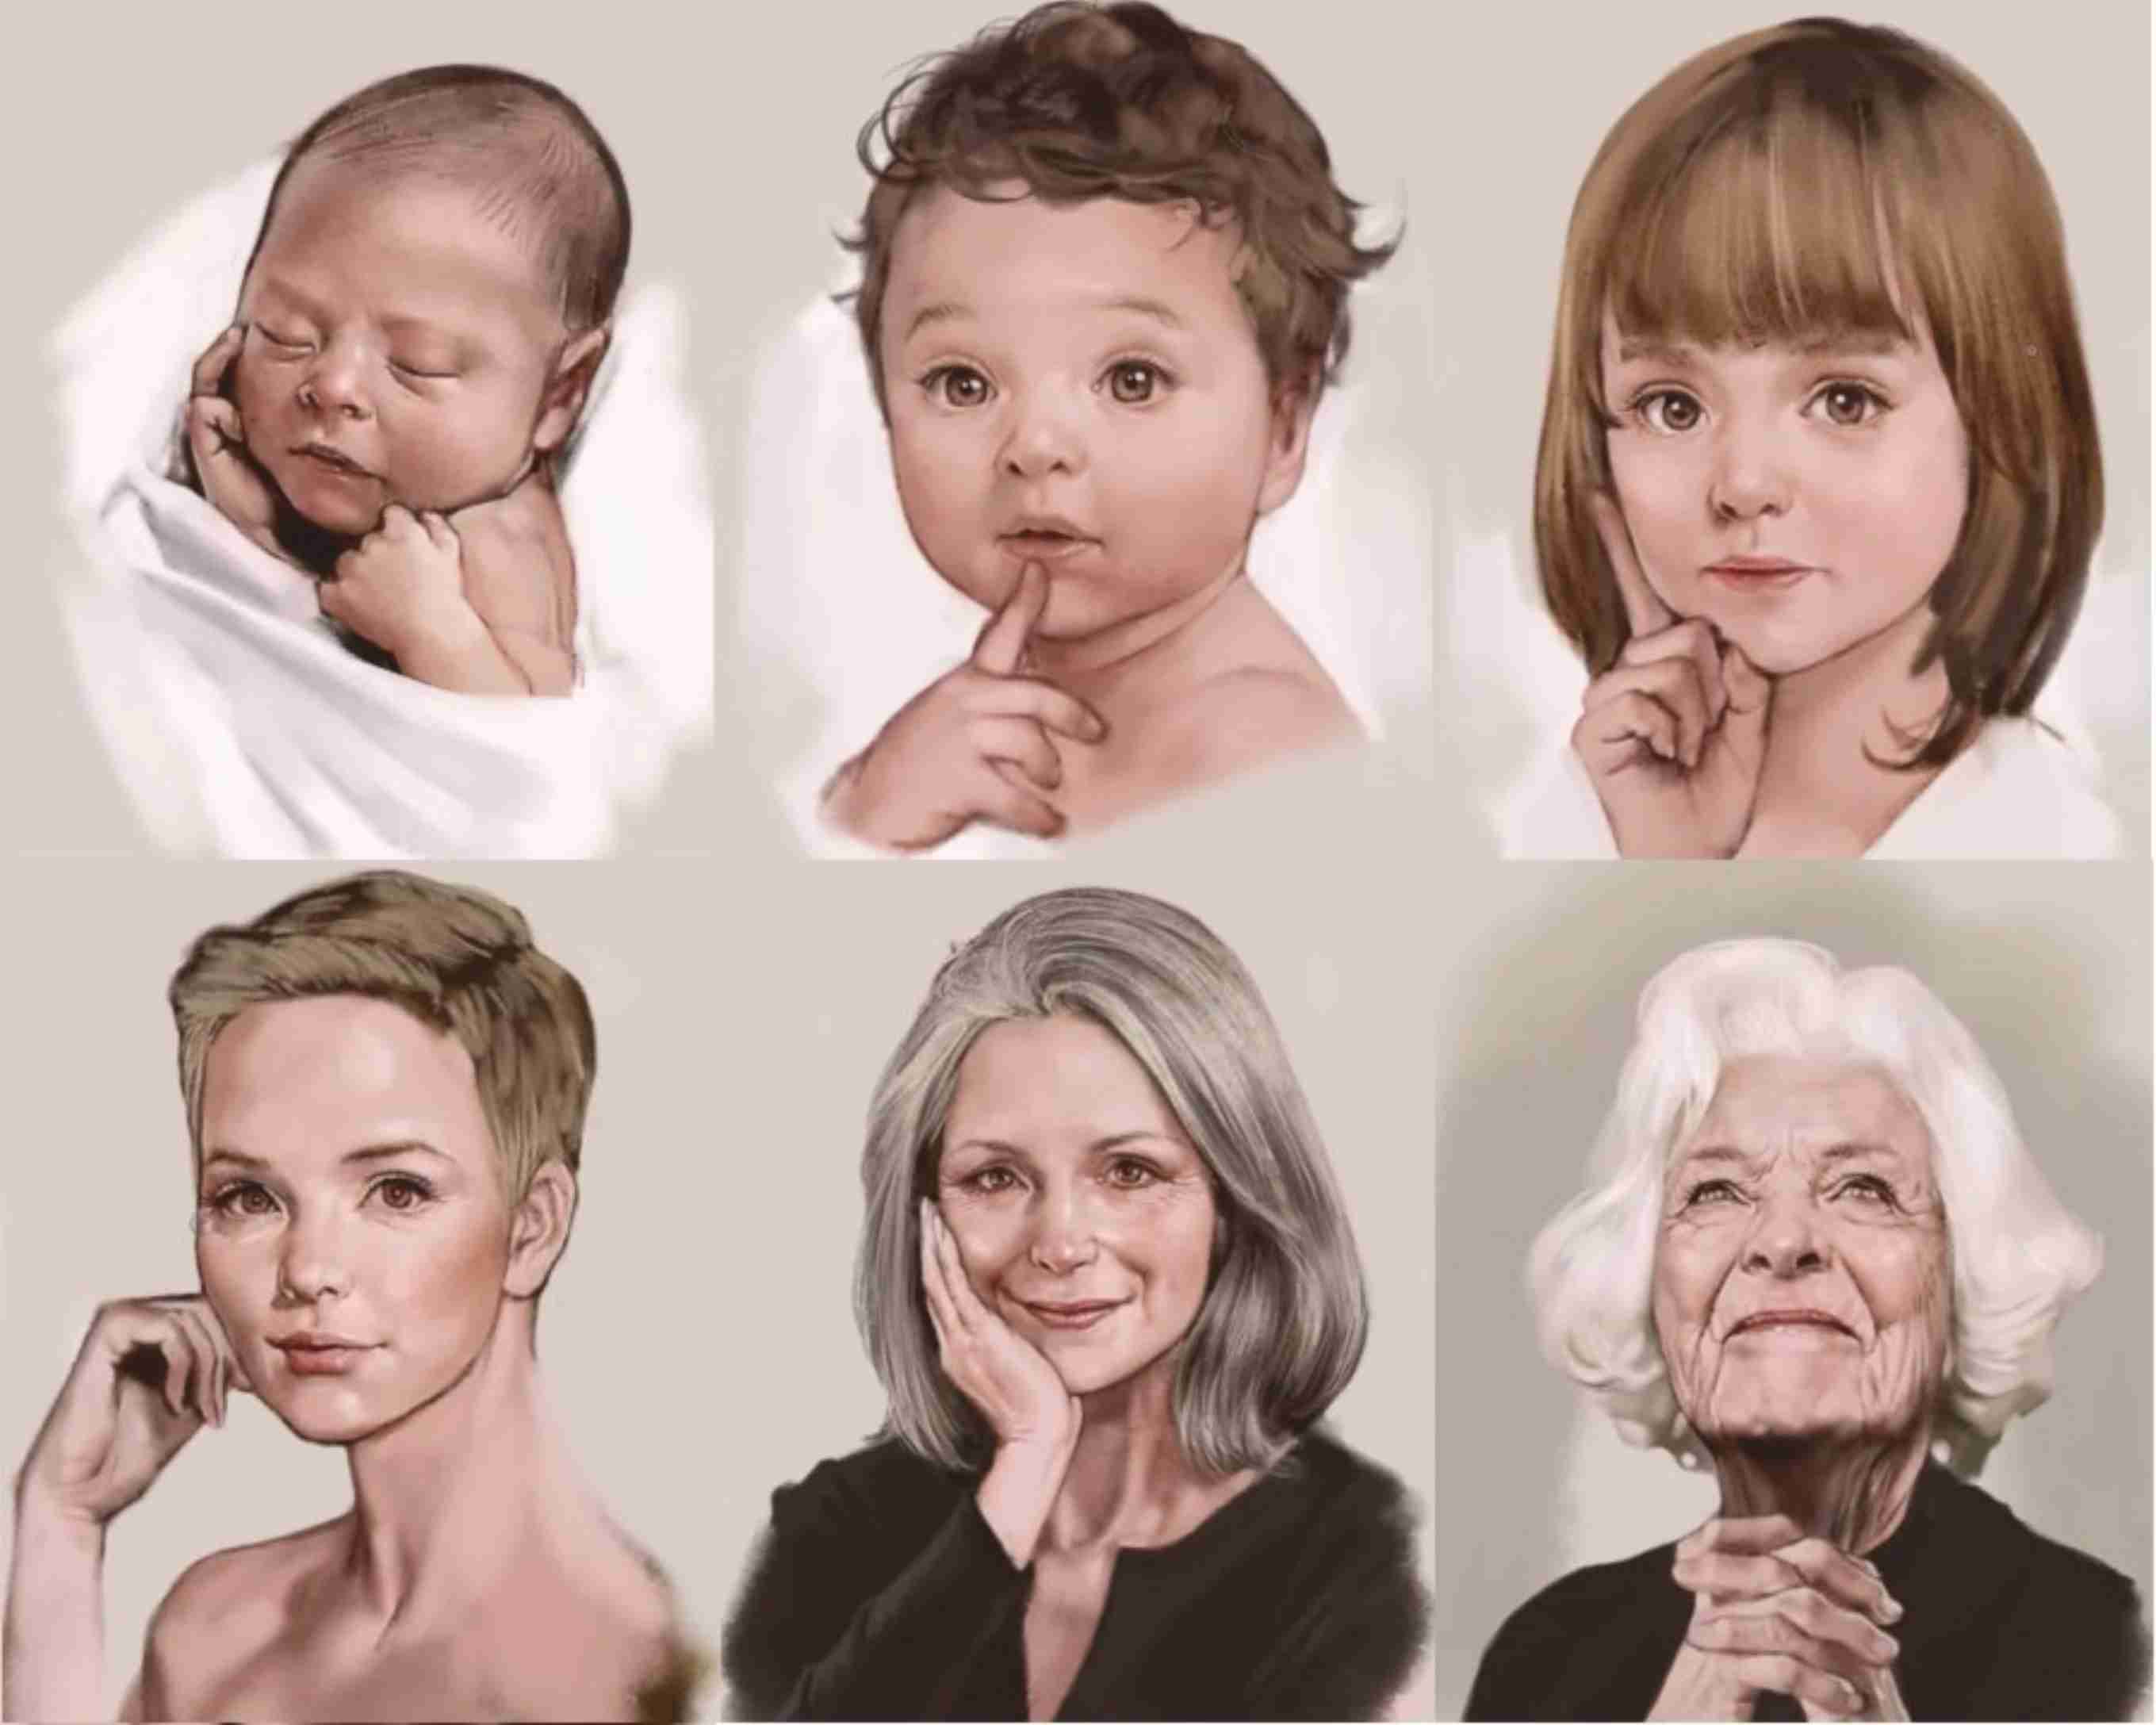 Регрессия ребенка. Женщины разных возрастов. Портреты людей разных возрастов. Человек от рождения до старения. Иллюстрации людей разных возрастов.